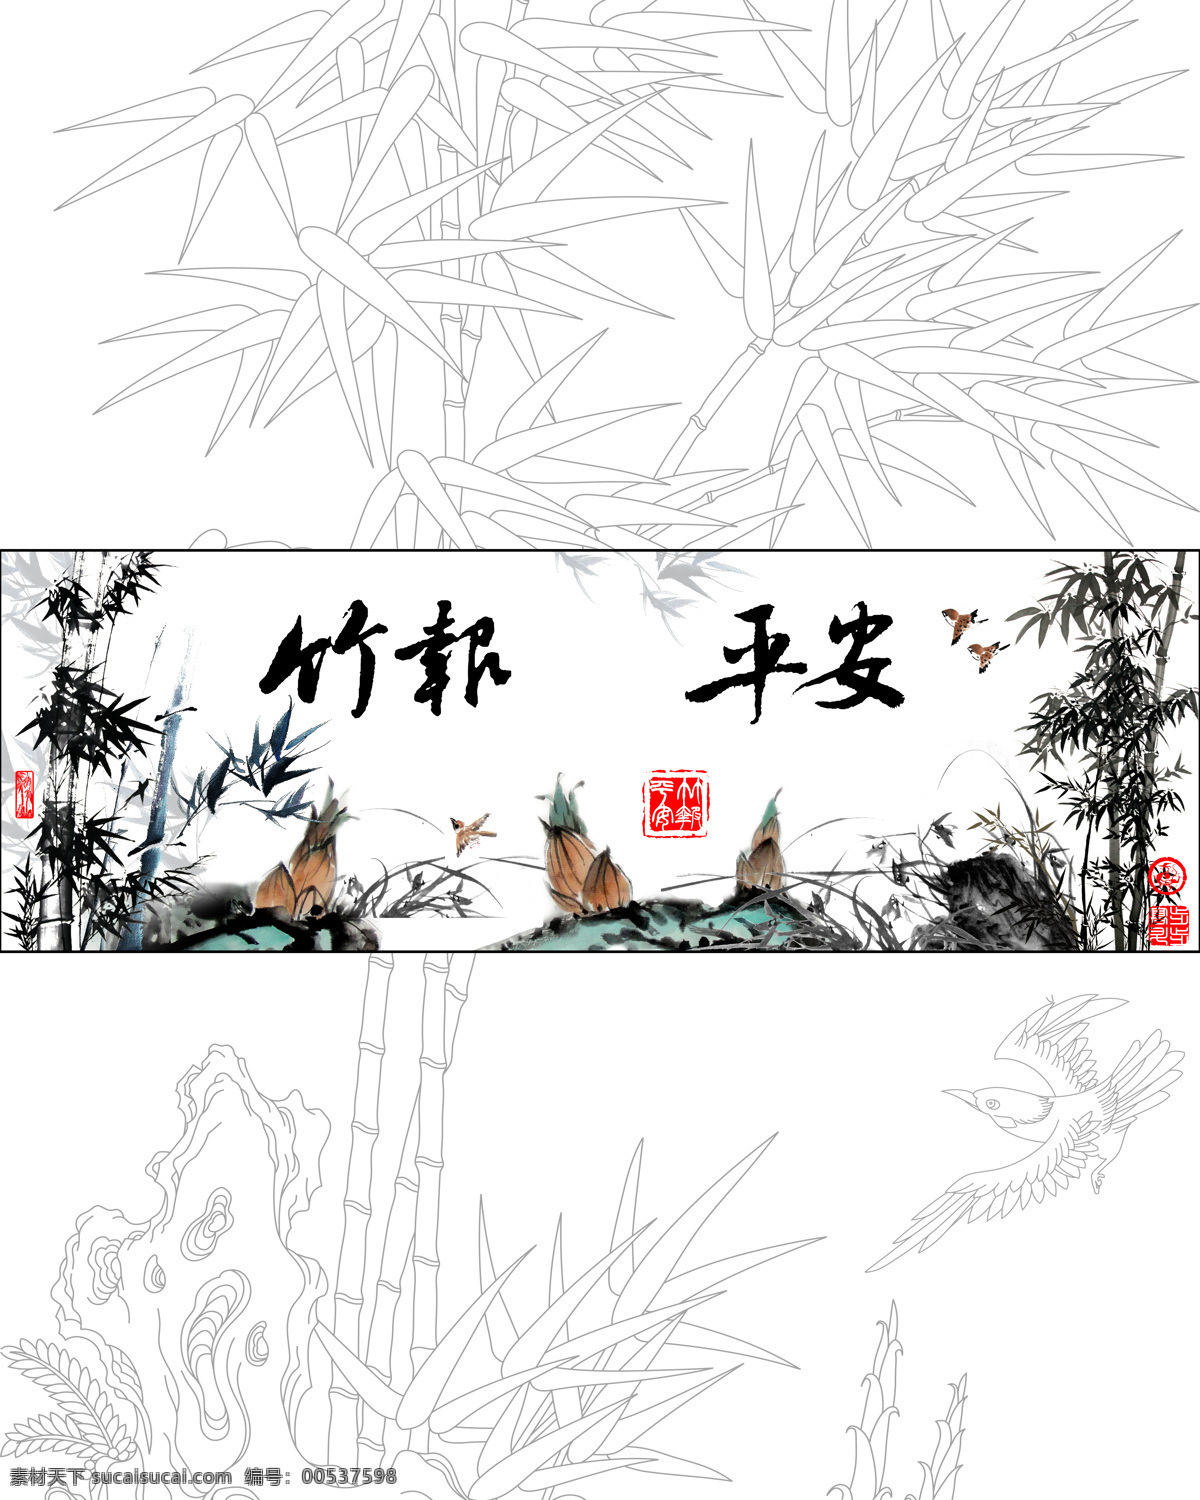 竹报平安 玻璃移门图案 竹子 书法 绘画书法 文化艺术